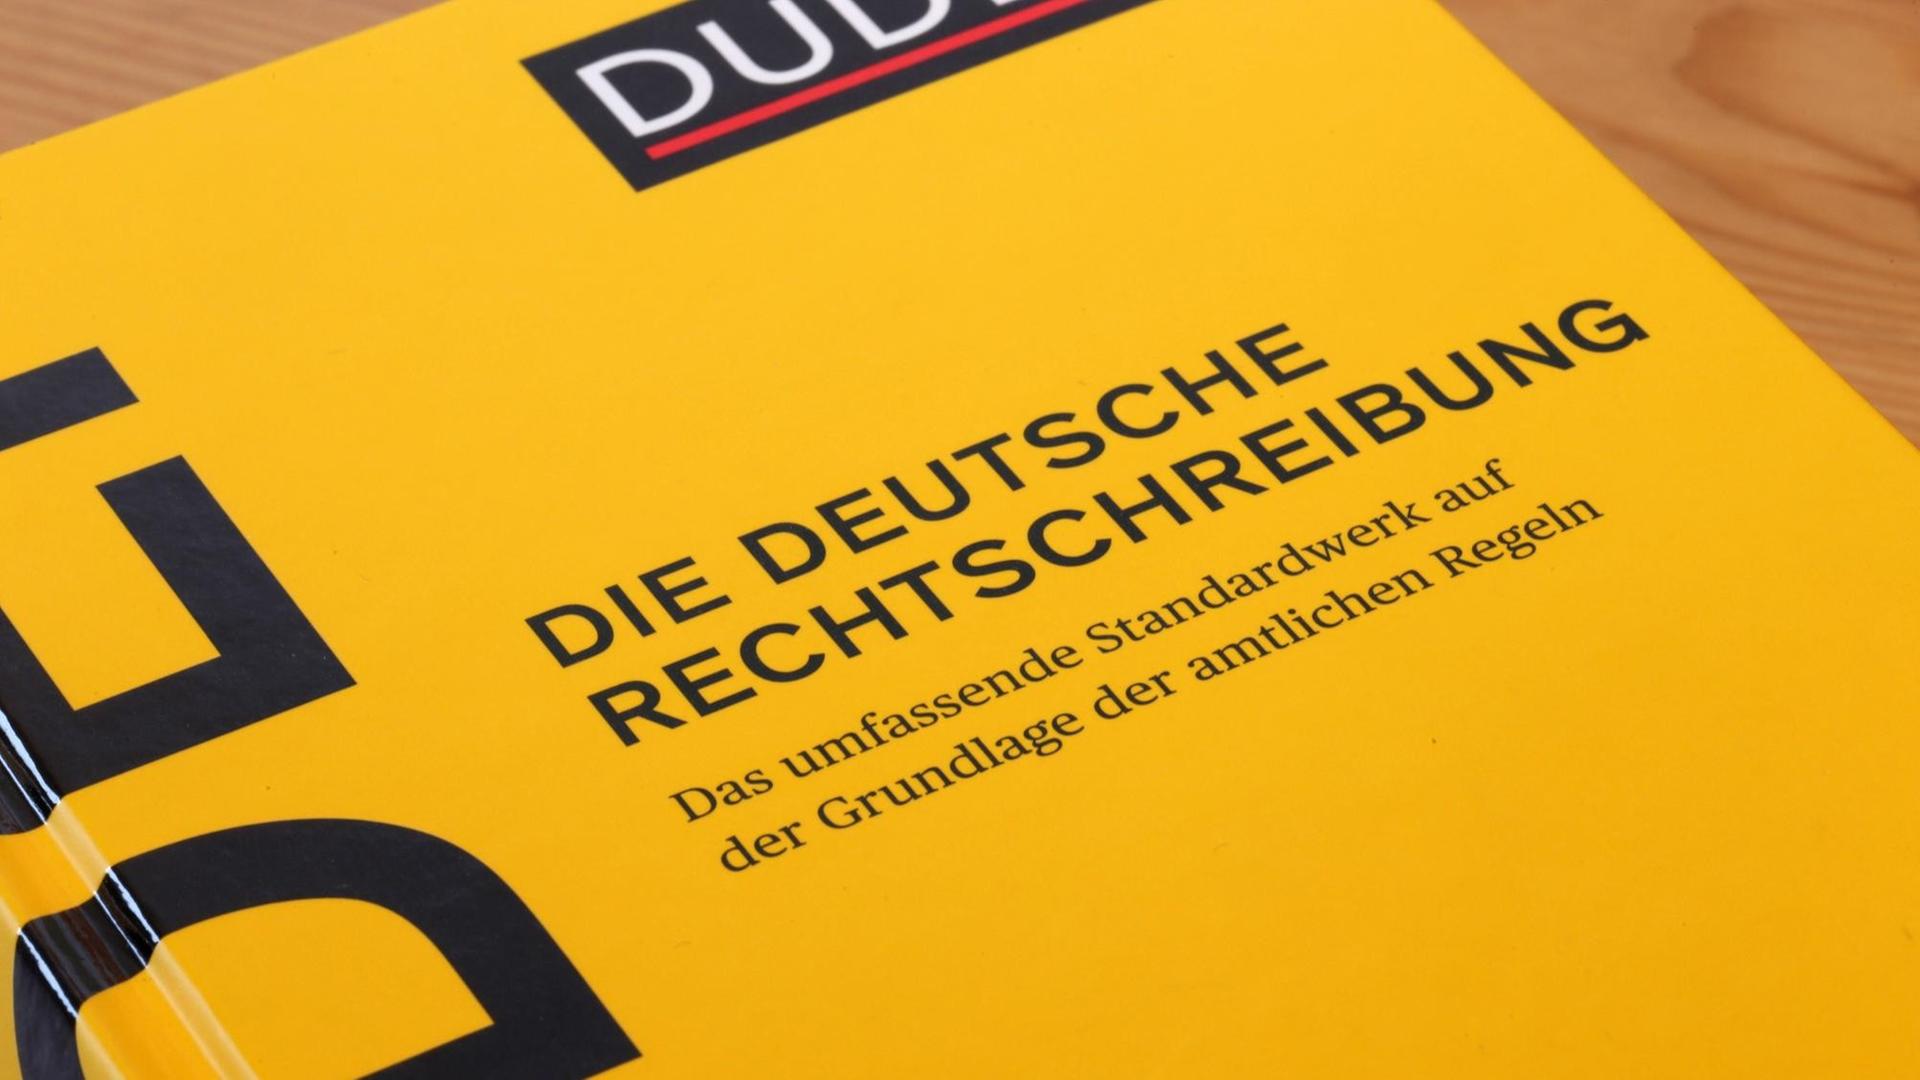 Die 28. Auflage des Duden, erschienen am 12. August 2020.